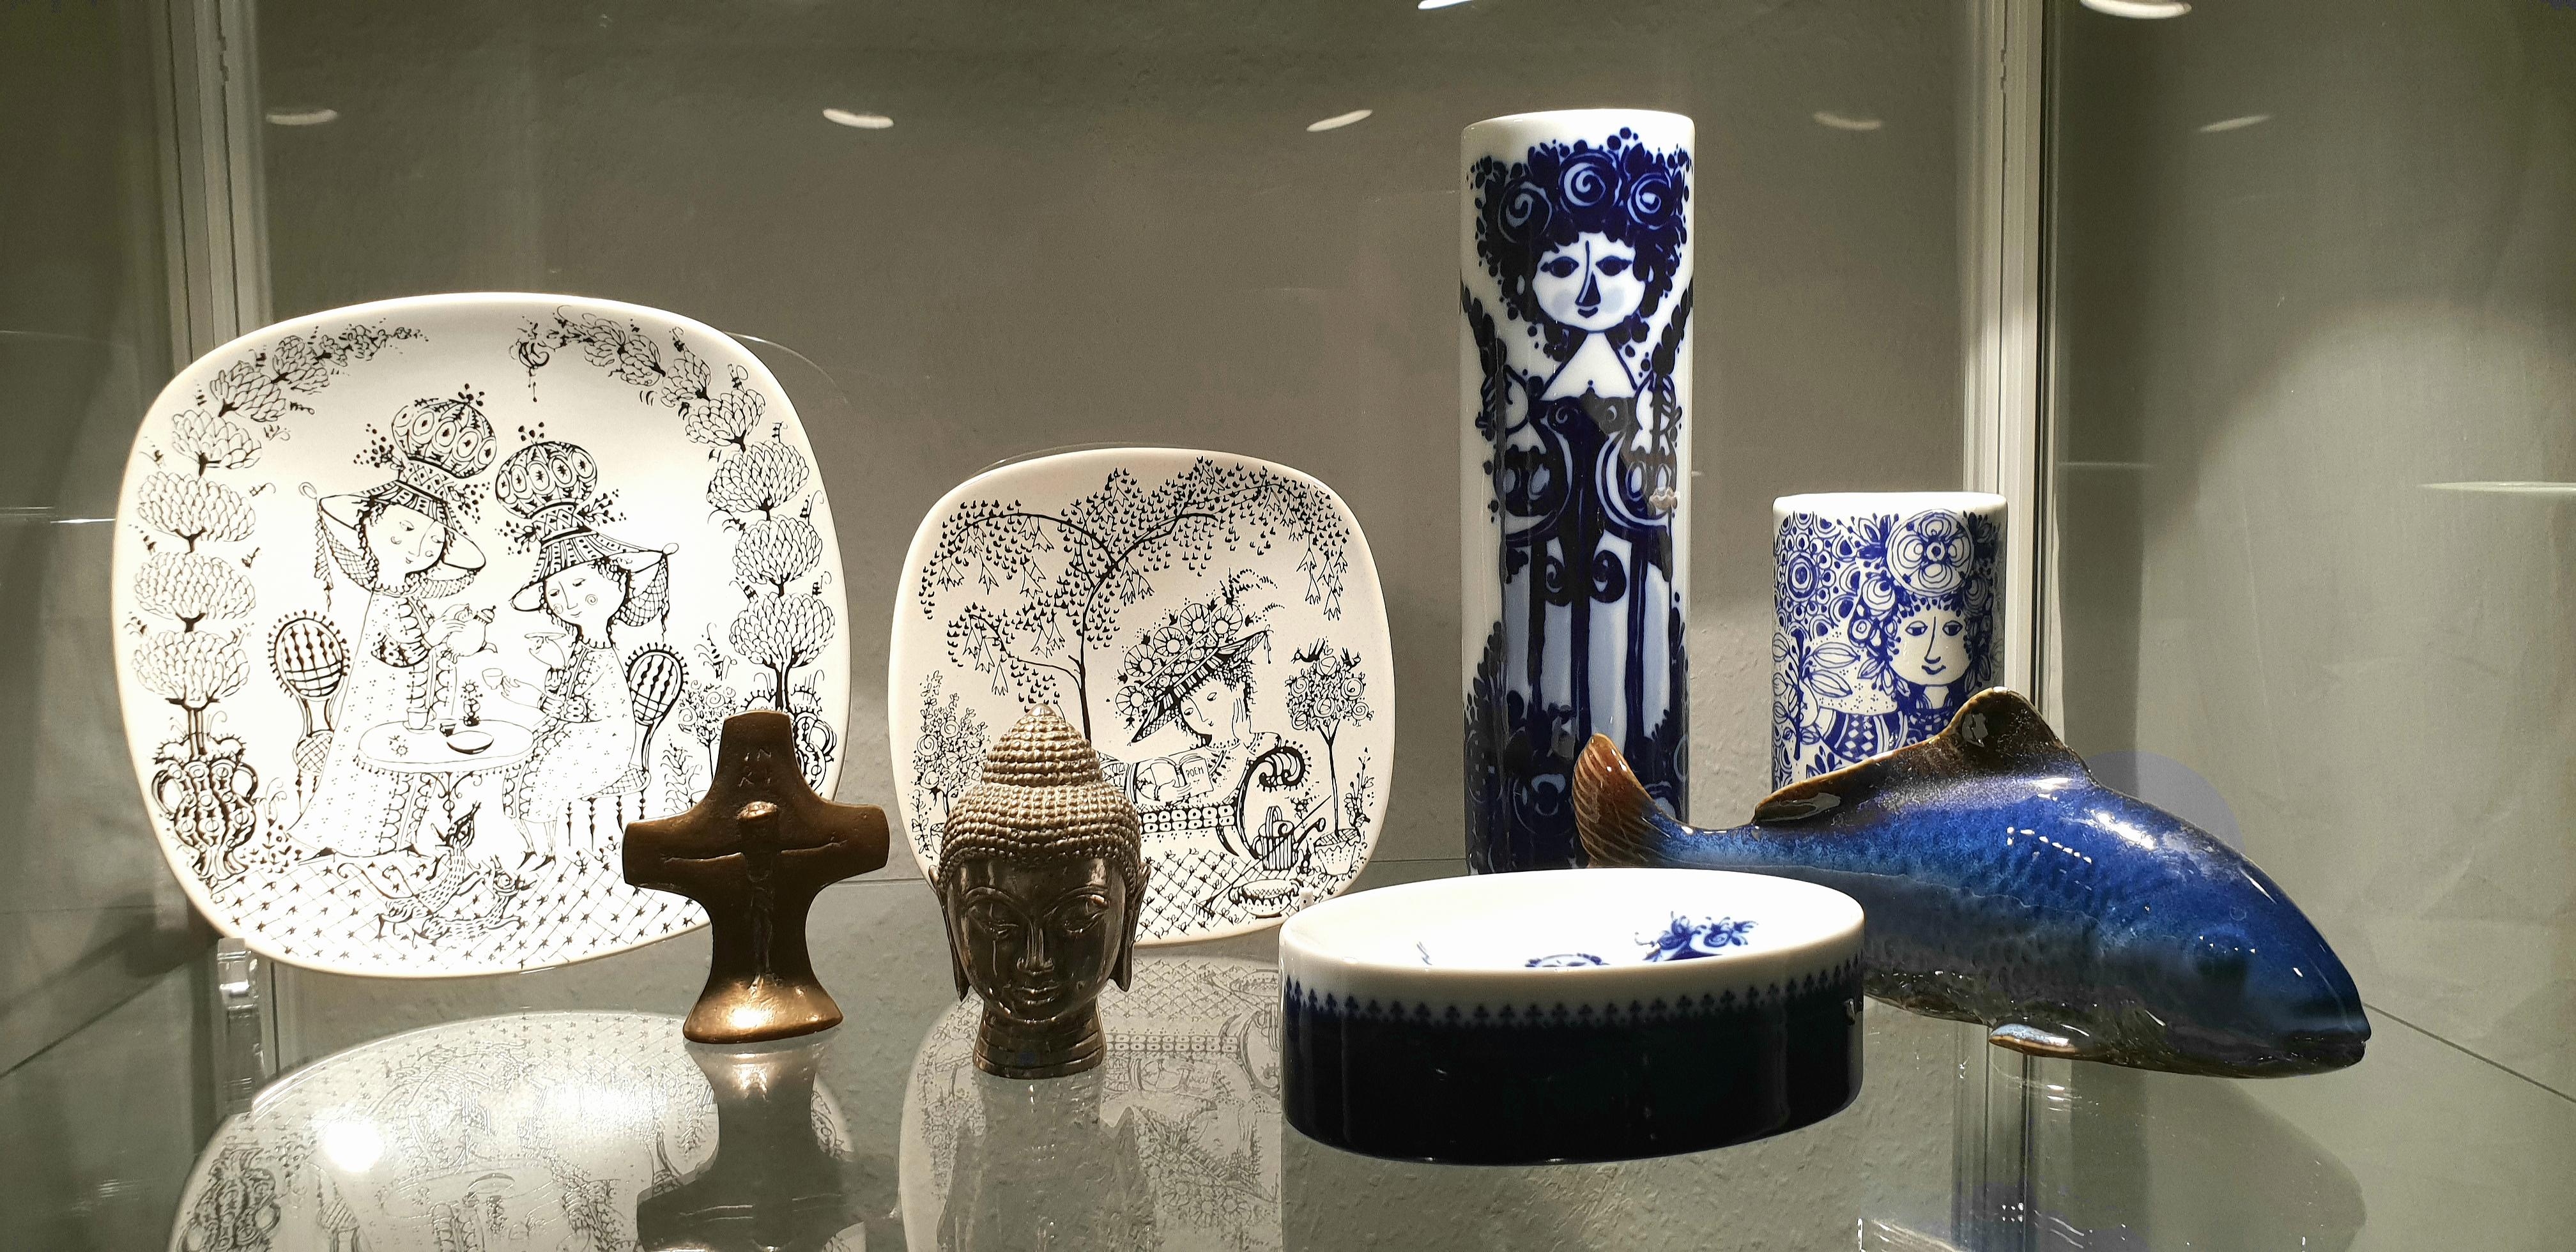 #keramik #vase #blau #rosenthal 
Die kleine Bjørn #Wiinblad Collection.